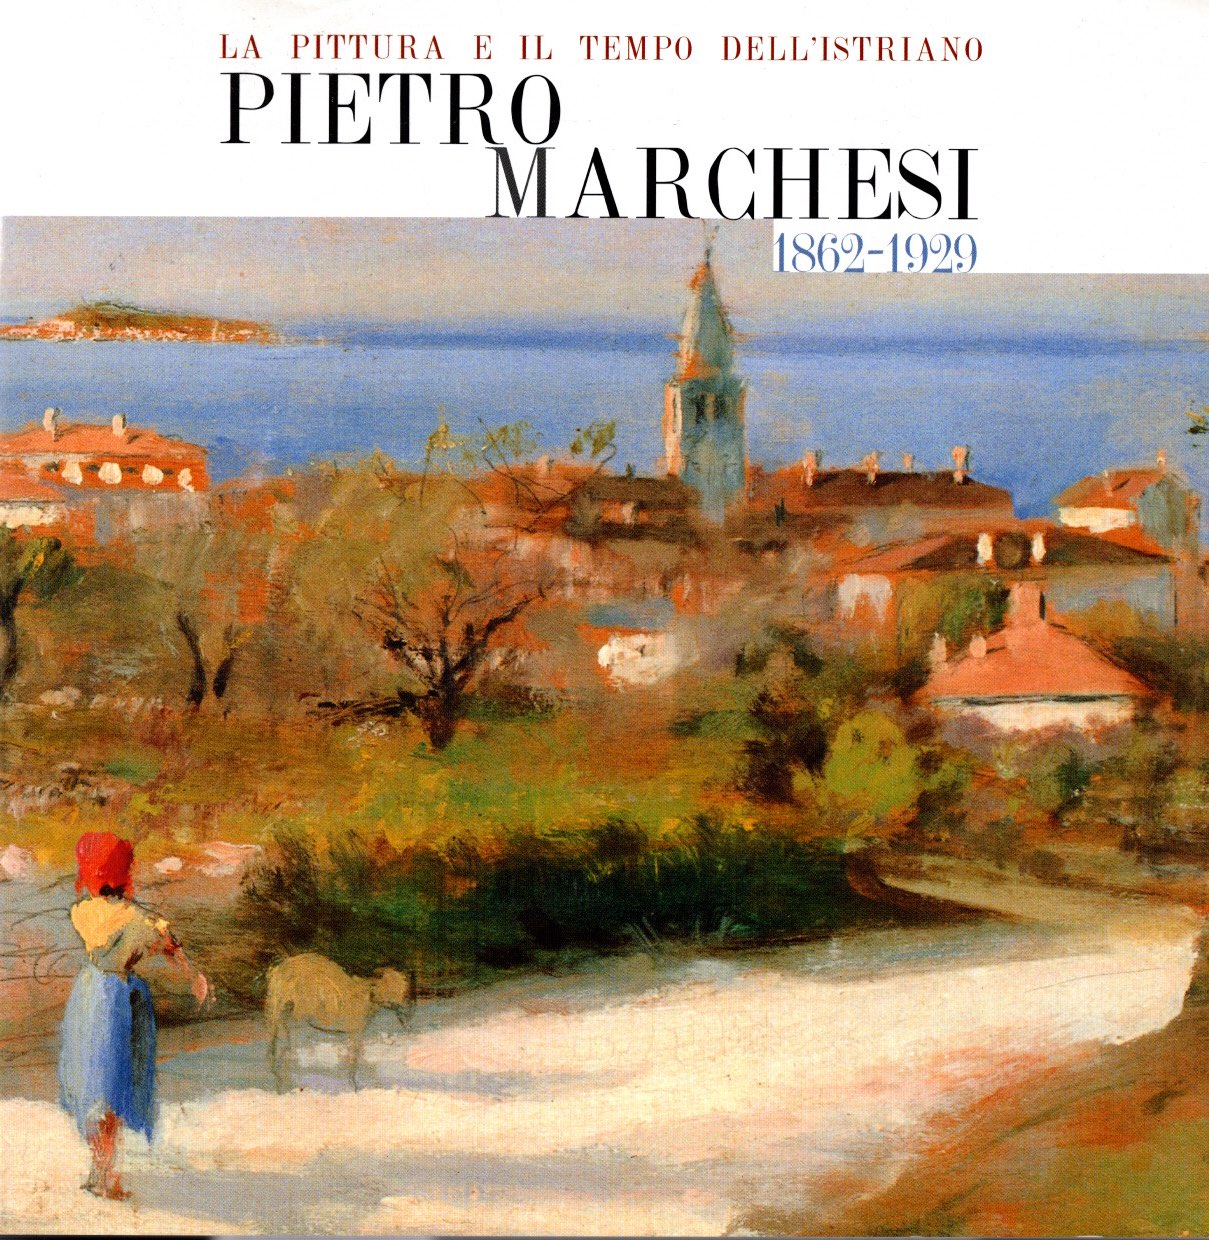 La pittura e il tempo dell'istriano Pietro marchesi 1862-1929 - 2 Tomi